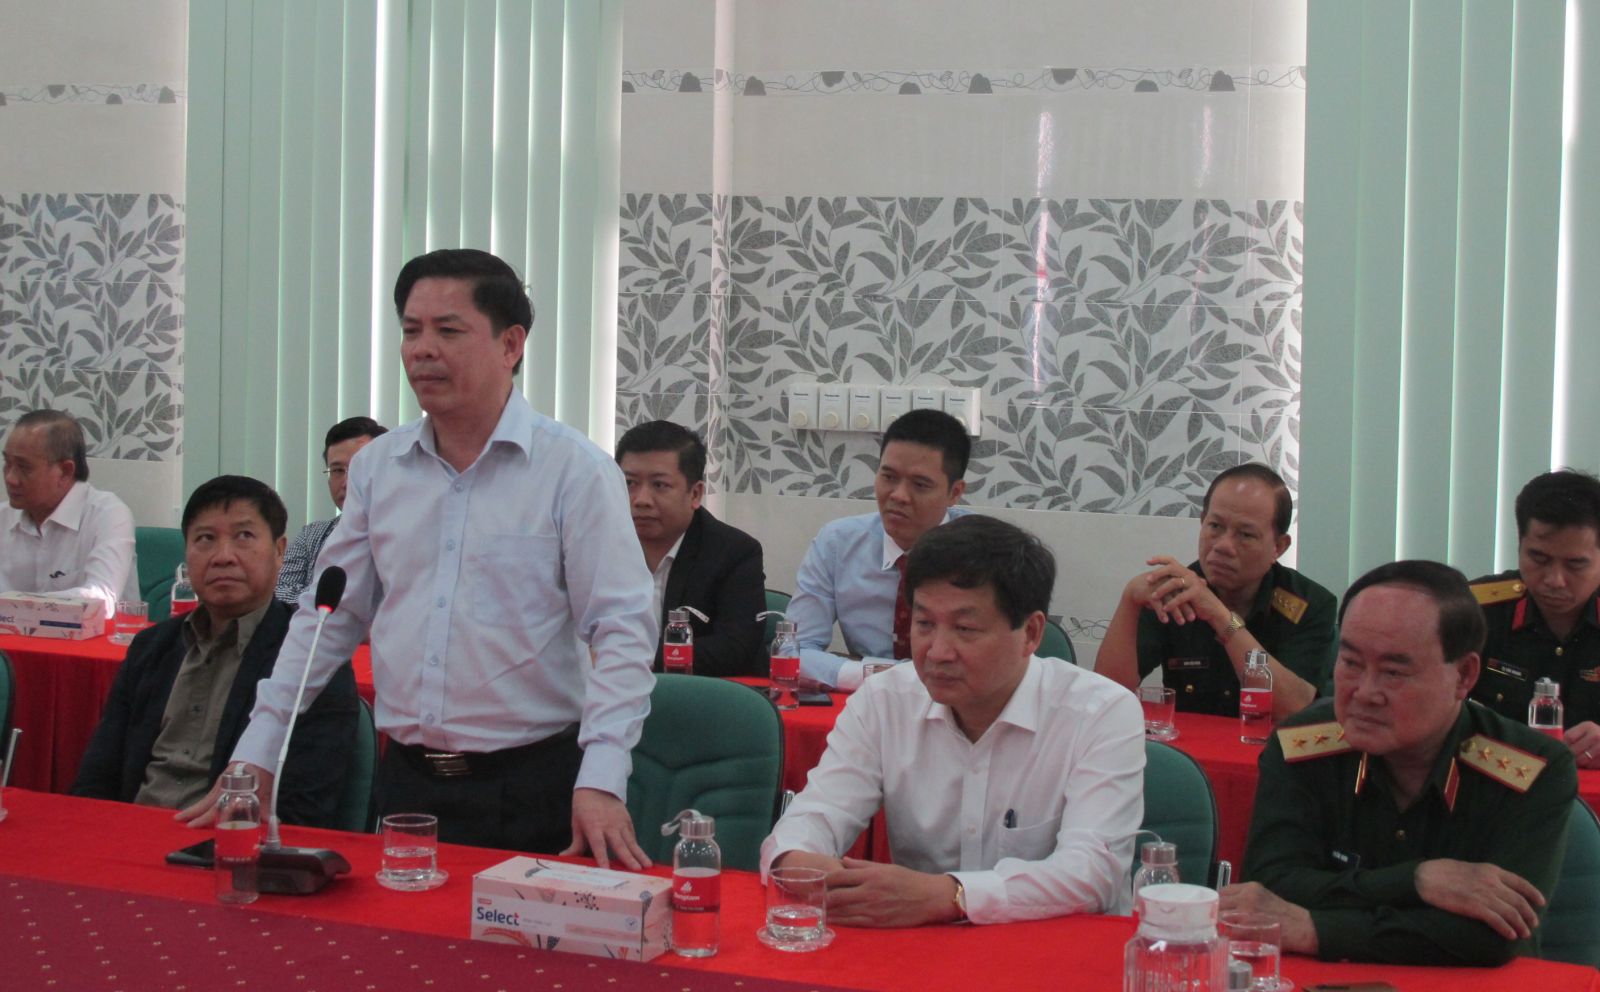 Bộ Trưởng Bộ Giao thông Vận tải - Nguyễn Văn Thể phát biểu góp ý về phát triển hạ tầng giao thông ở Long An